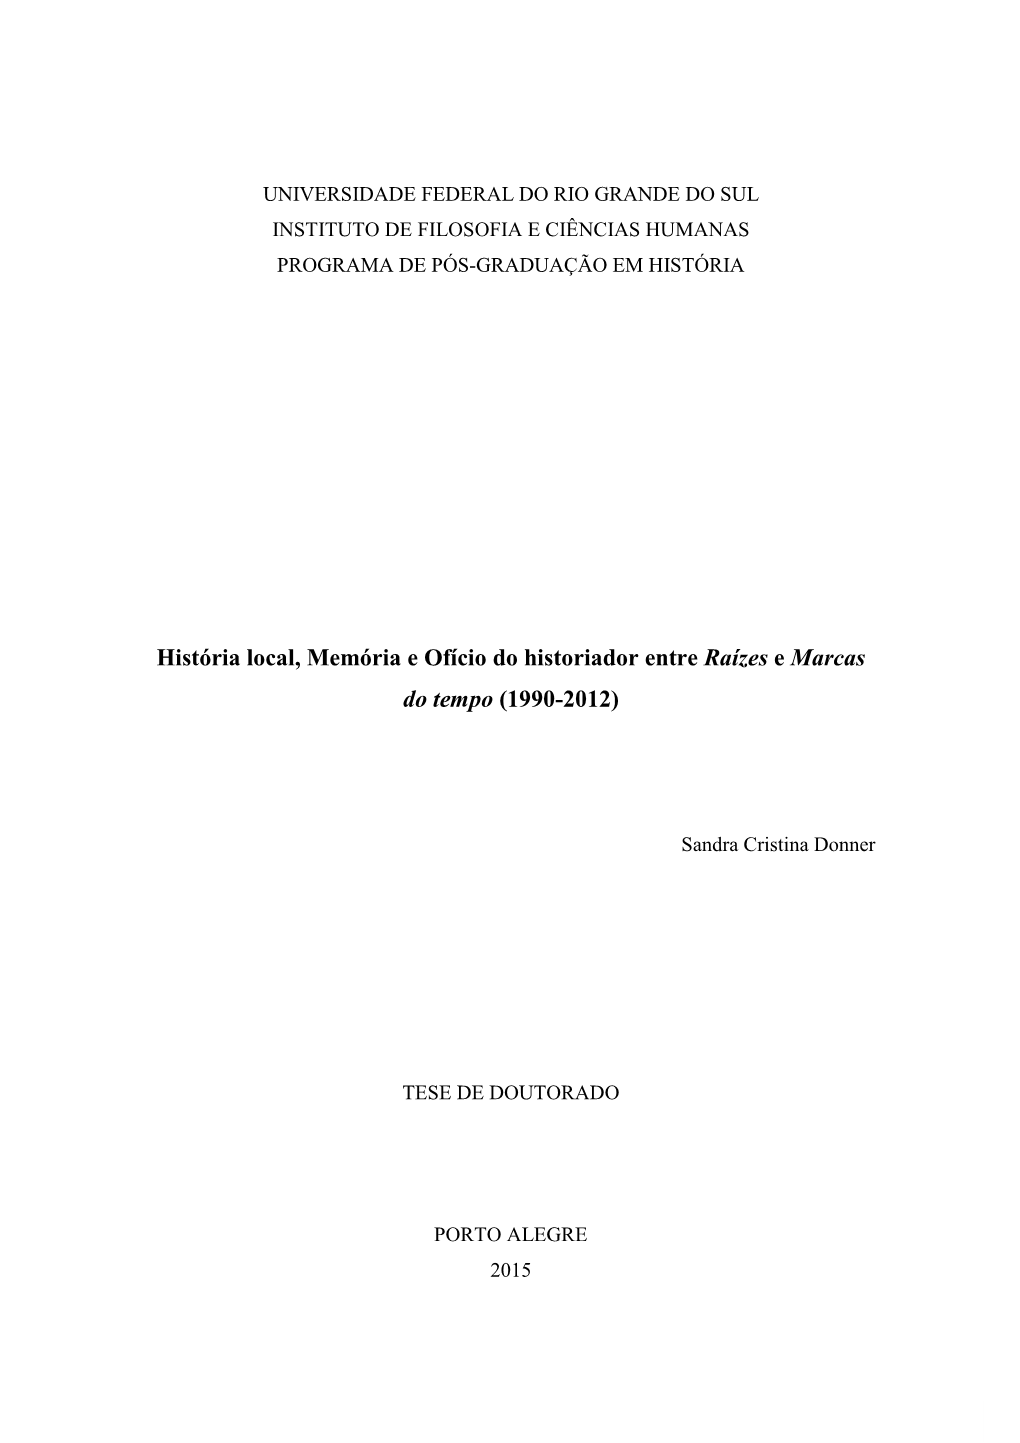 História Local, Memória E Ofício Do Historiador Entre Raízes E Marcas Do Tempo (1990-2012)